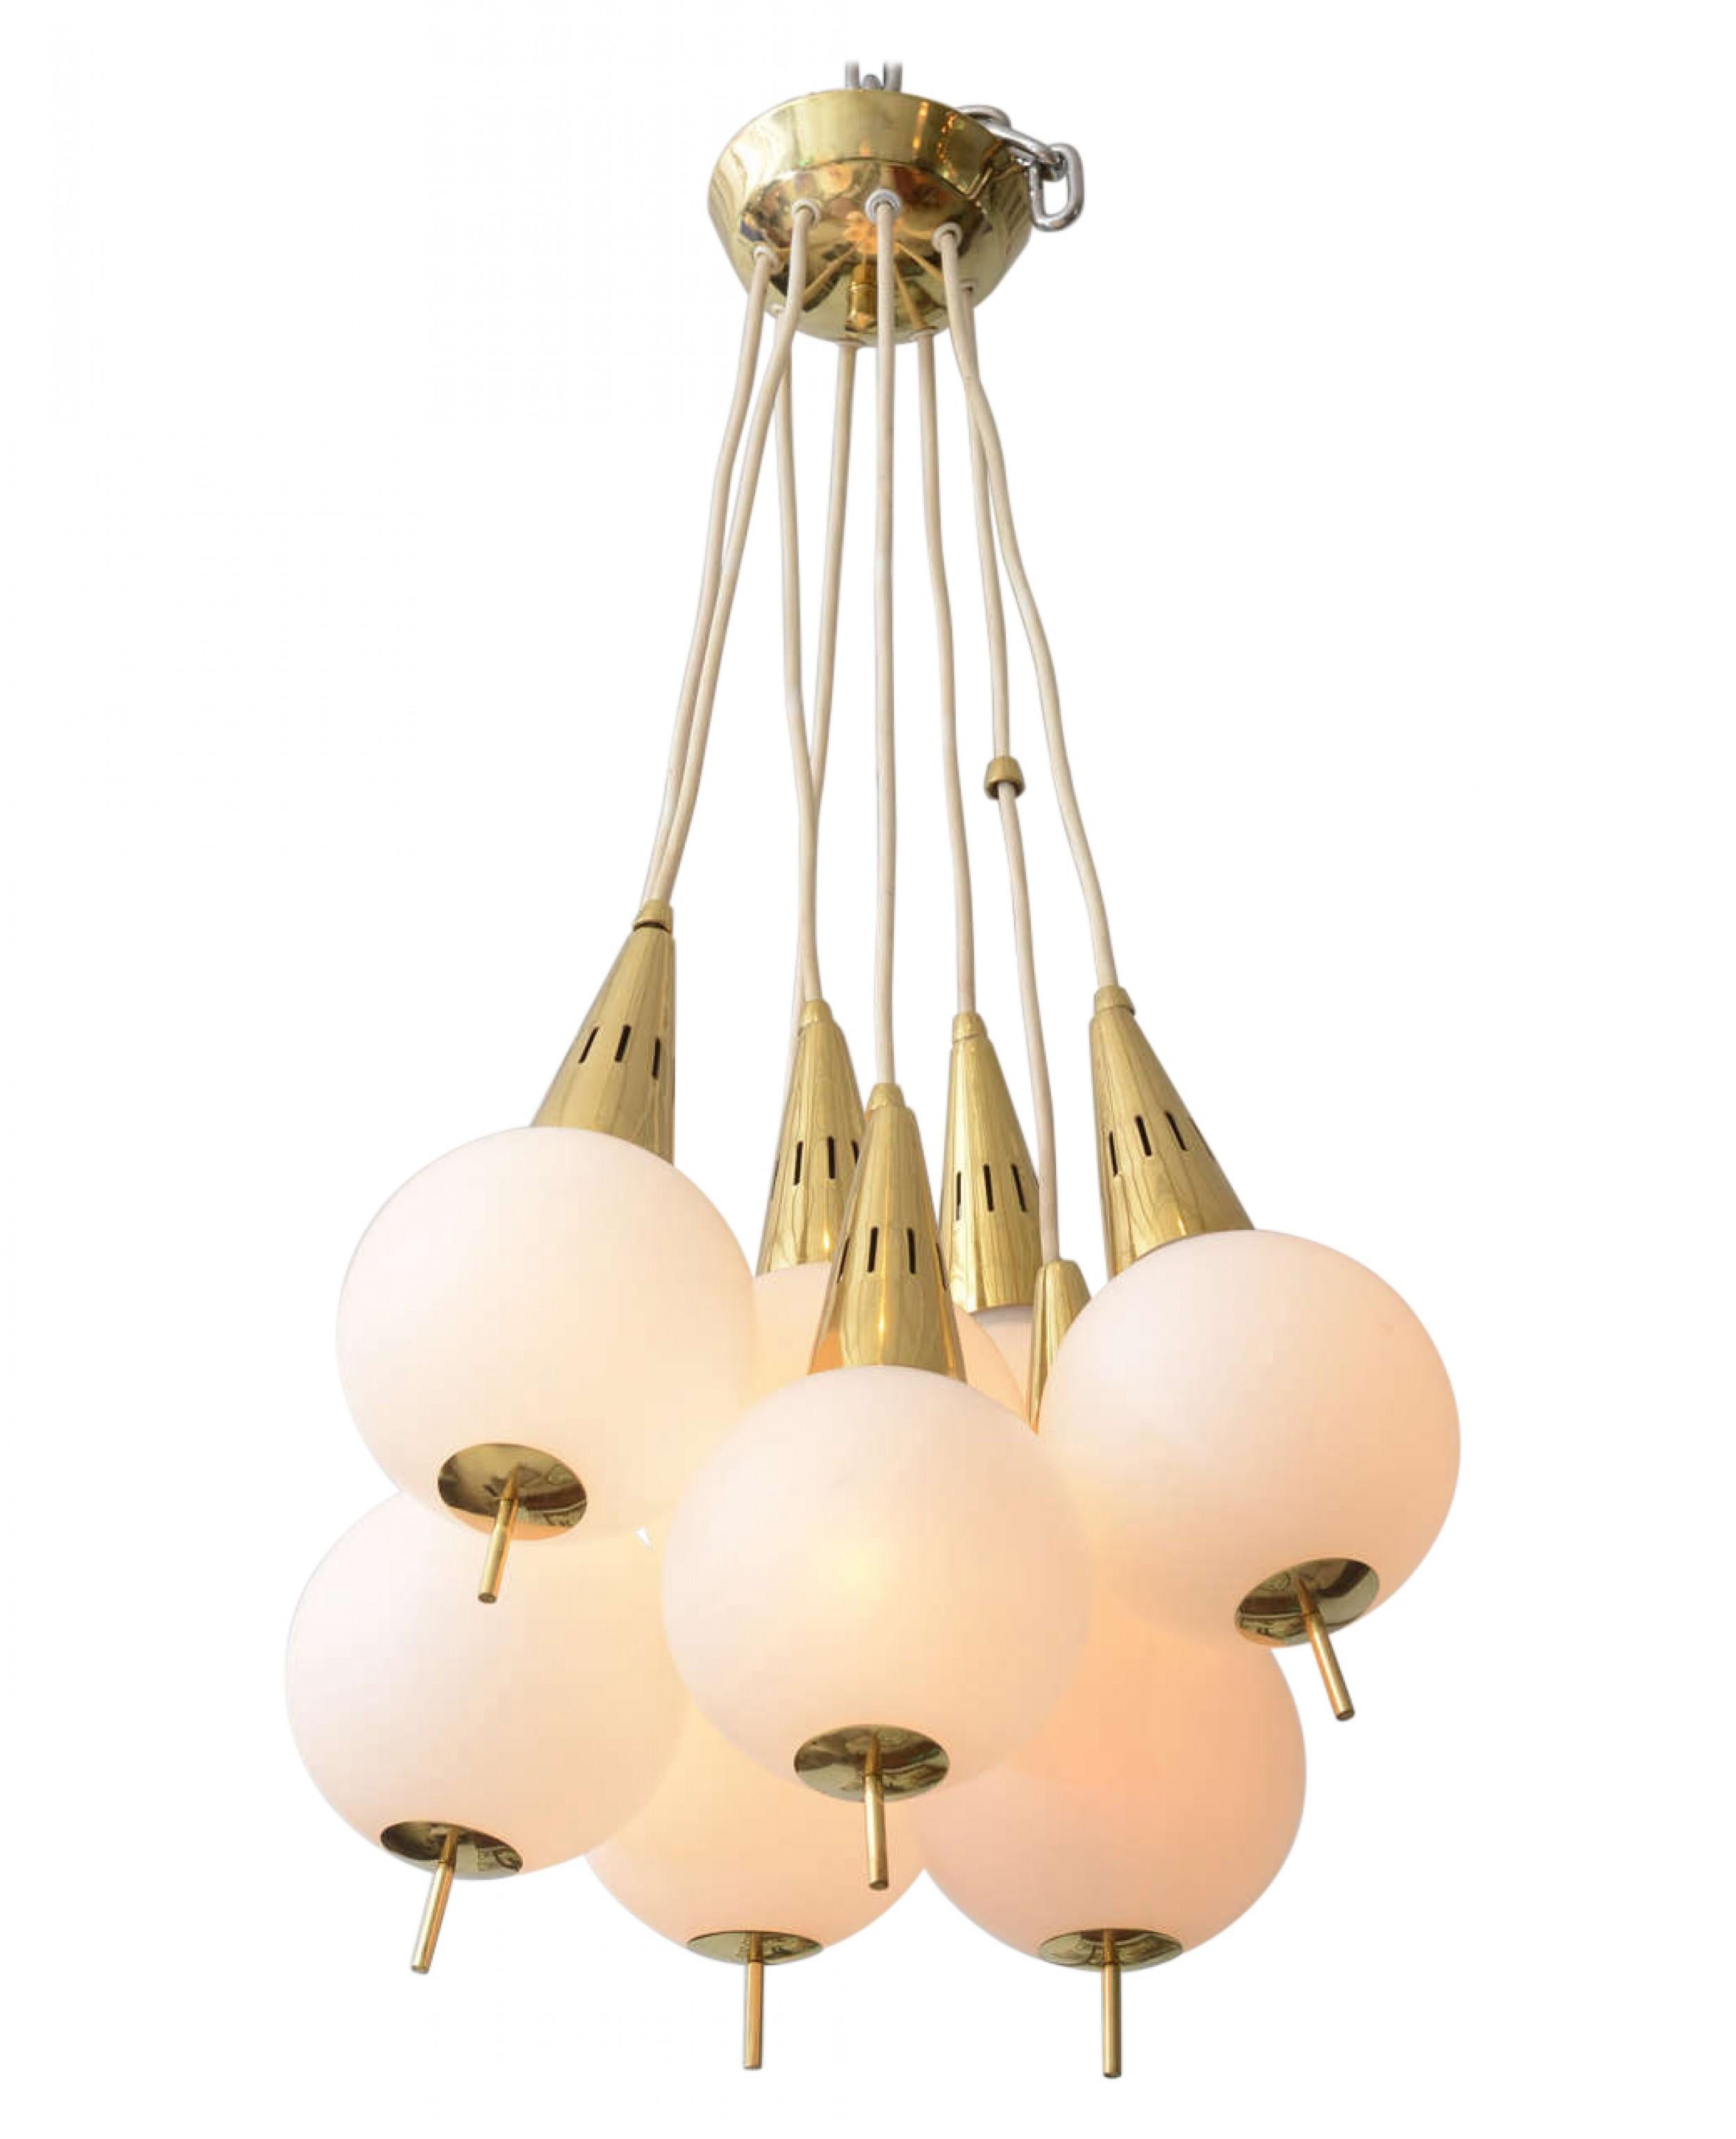 Italian modern brass and glass eight-light chandelier in the manner of Stilnovo.